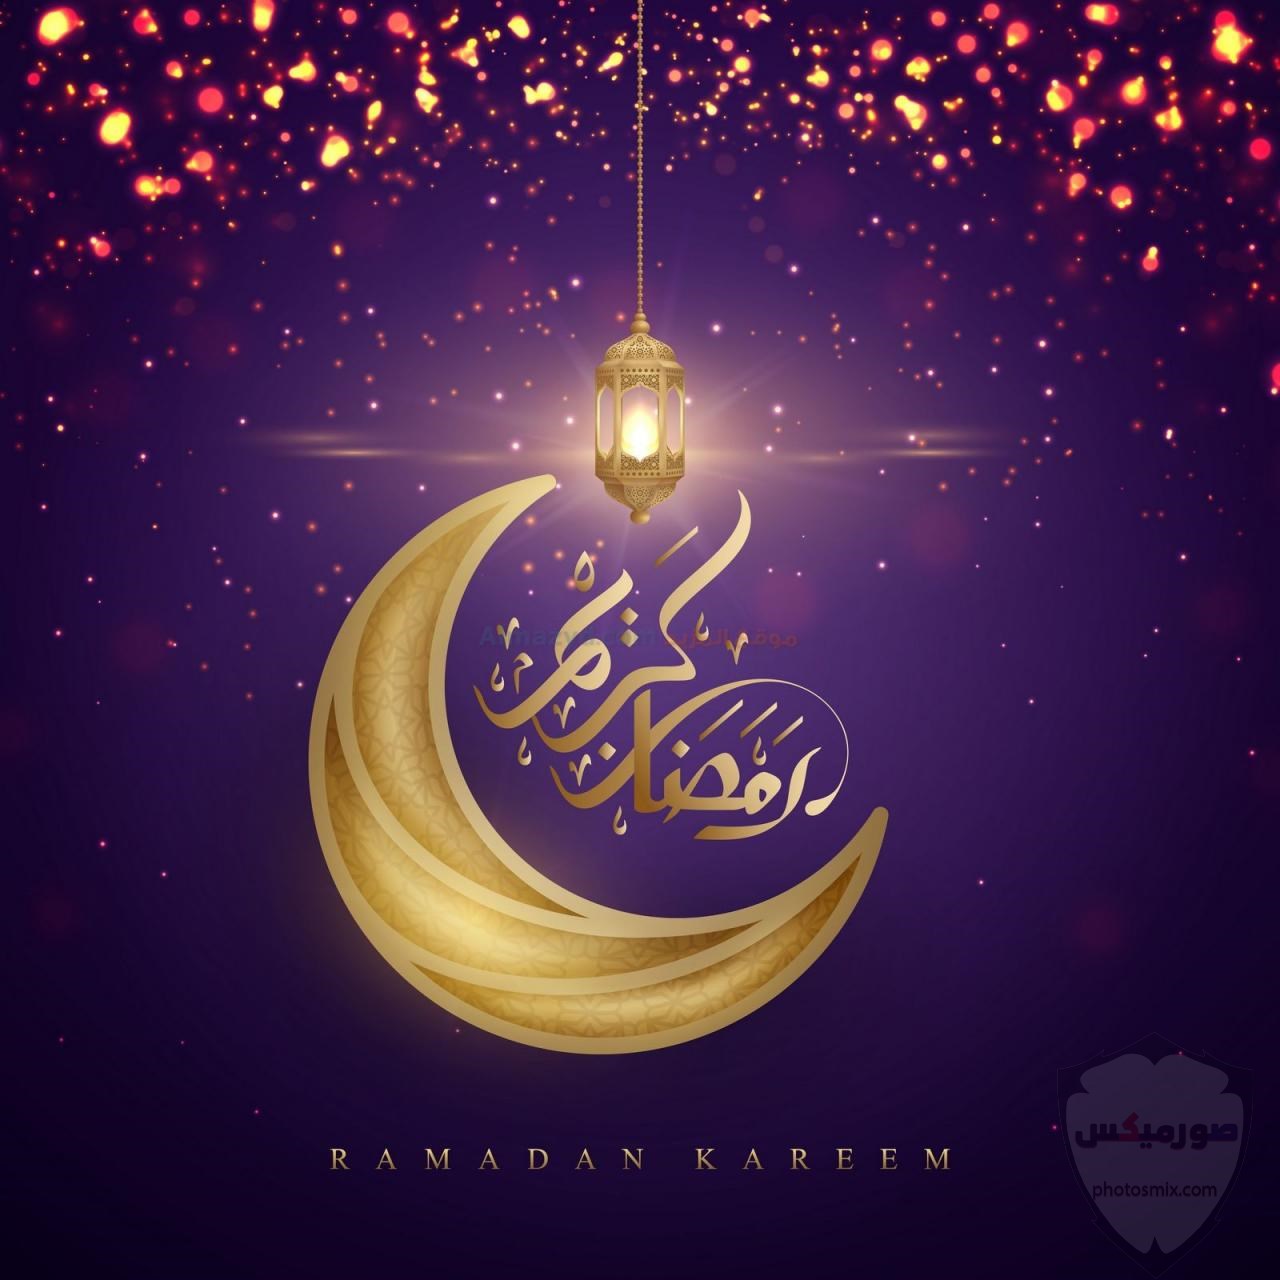 أدعية شهر رمضان 2020 مكتوبة “حصن المسلم” 11